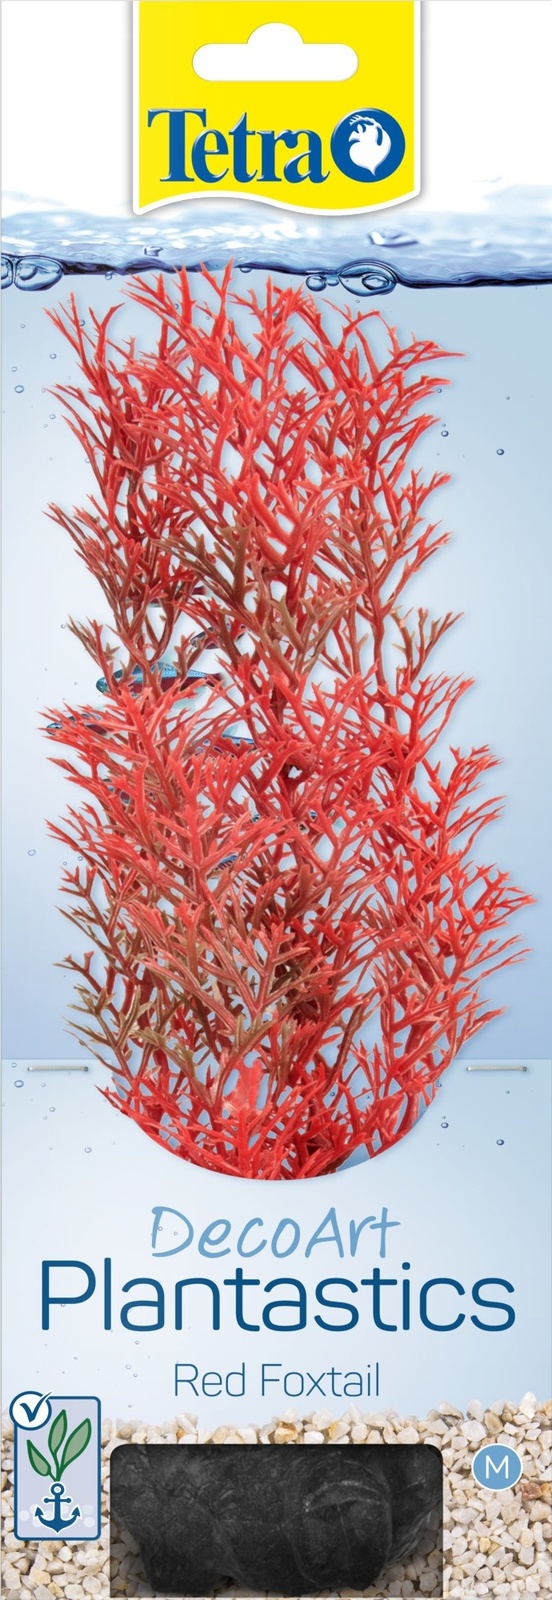 Tetra (оборудование) растение DecoArt Plantastics  Red Foxtail 23 см (50 г)